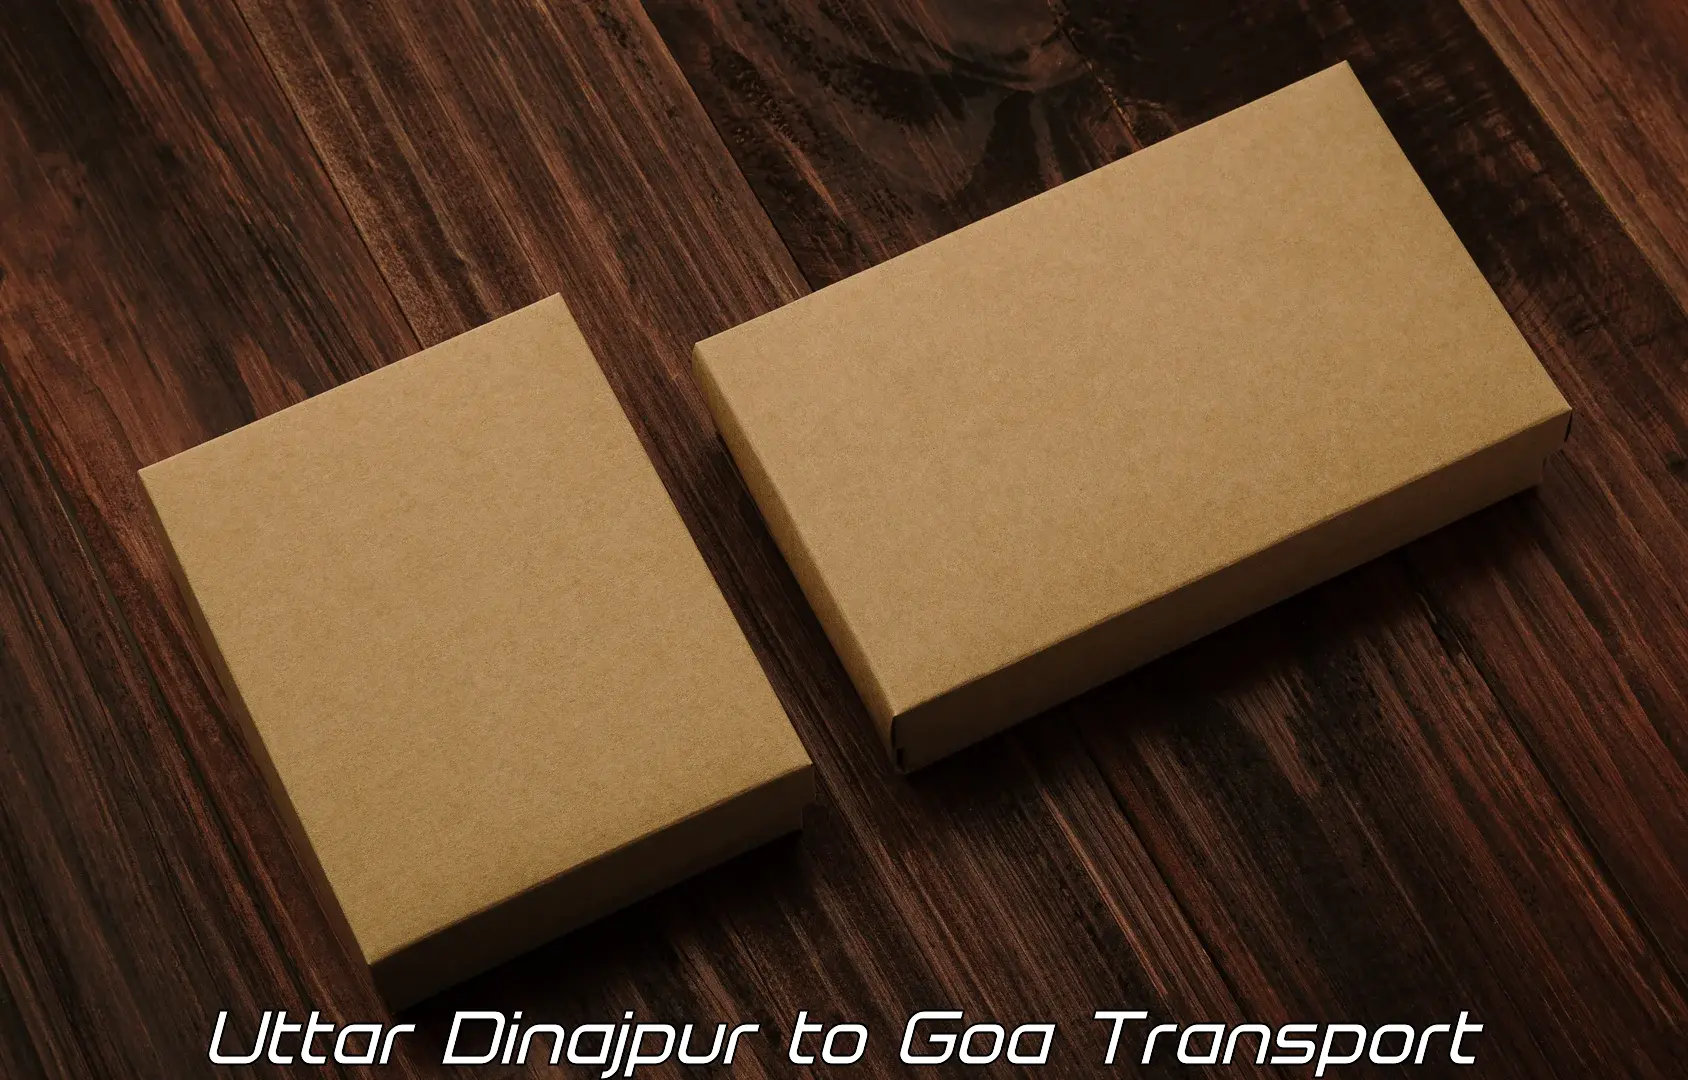 Commercial transport service Uttar Dinajpur to Mormugao Port